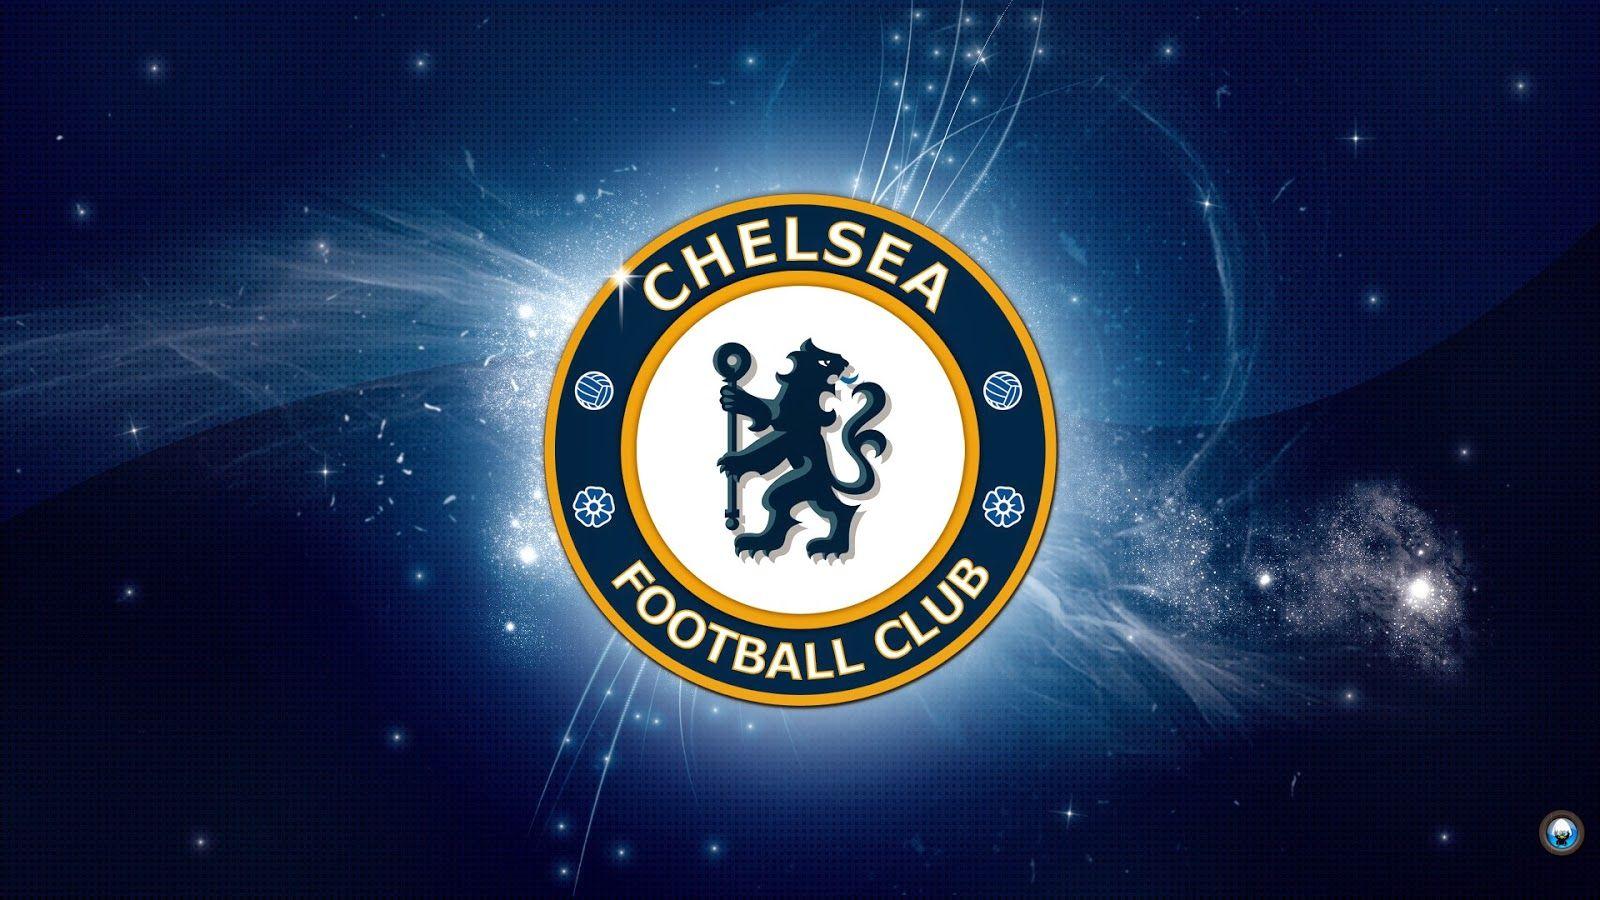 Kumpulan Foto Chelsea Fc Terkeren Dan Terbaru 2016. Bola